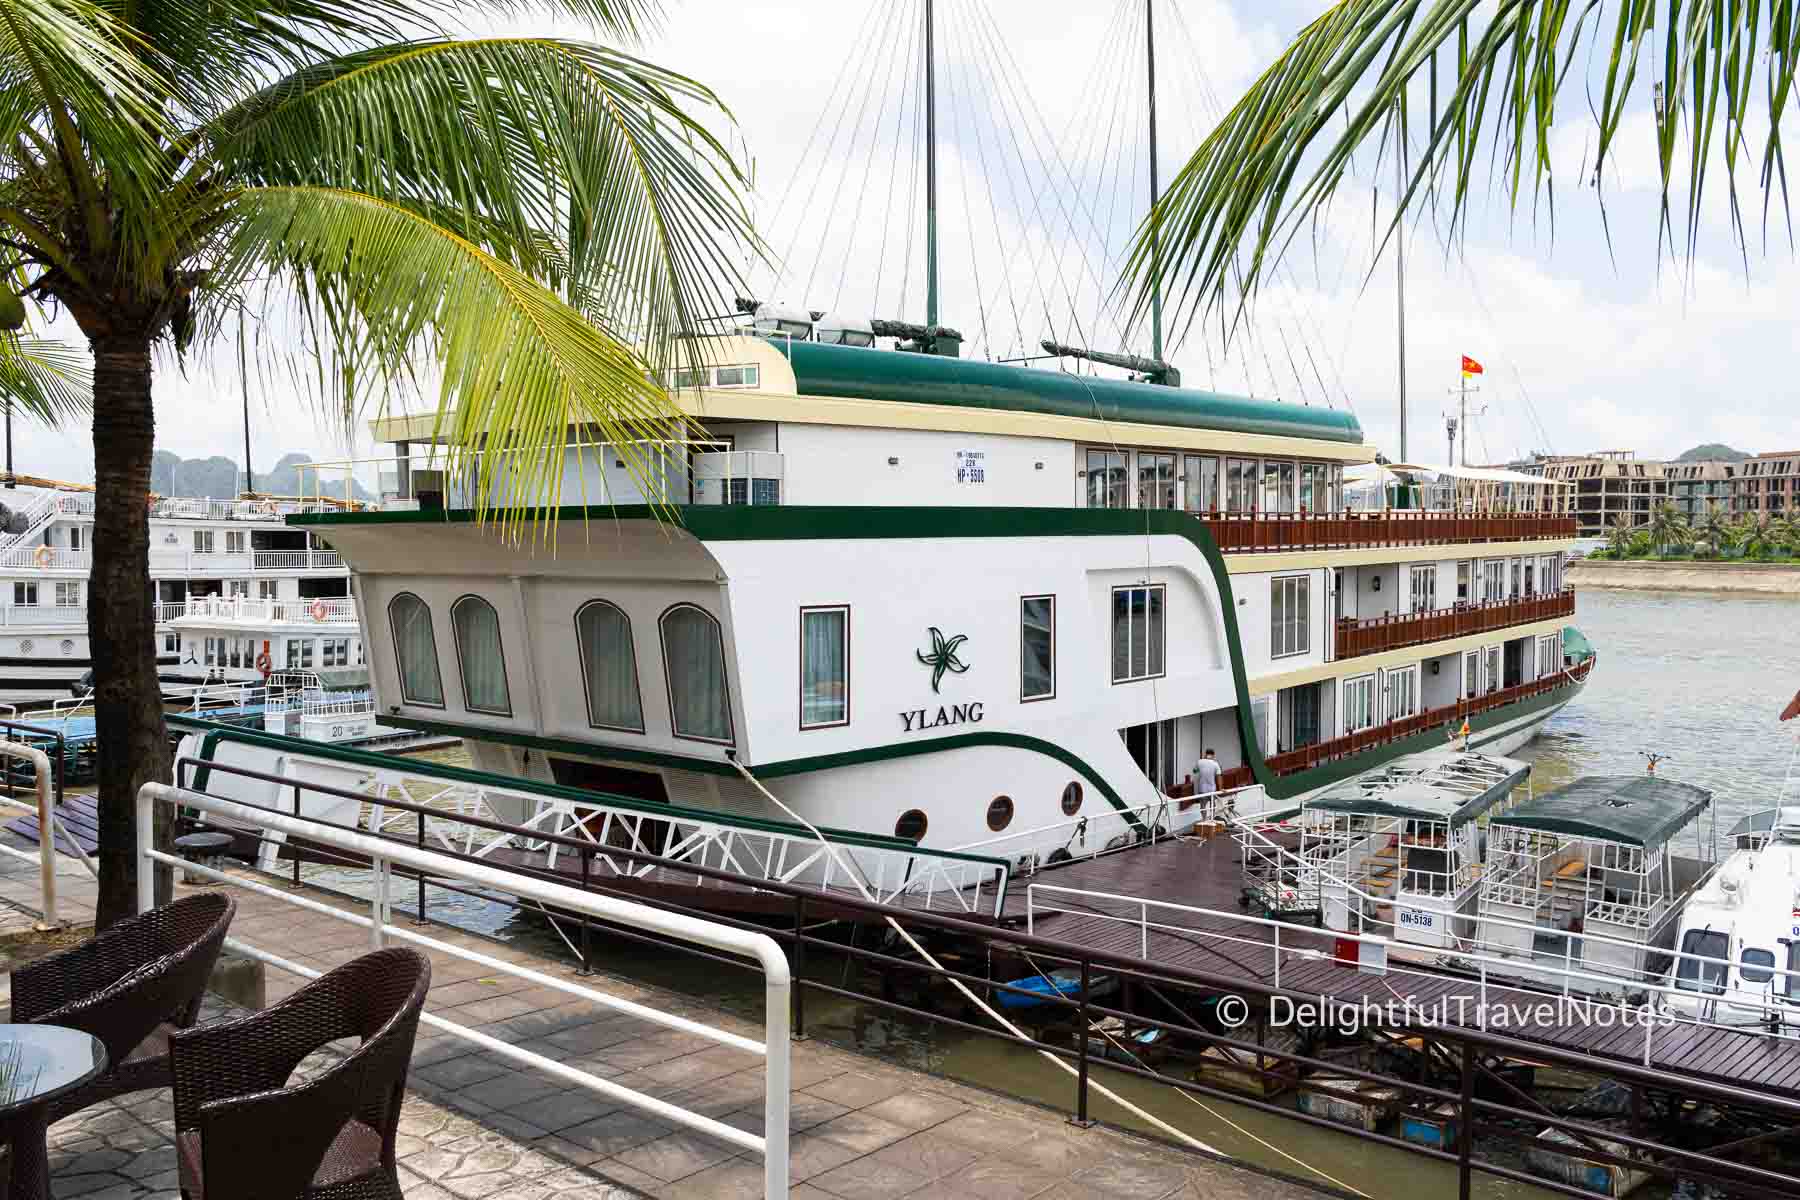 Ylang cruise ship by Heritage Line in Lan Ha Bay.